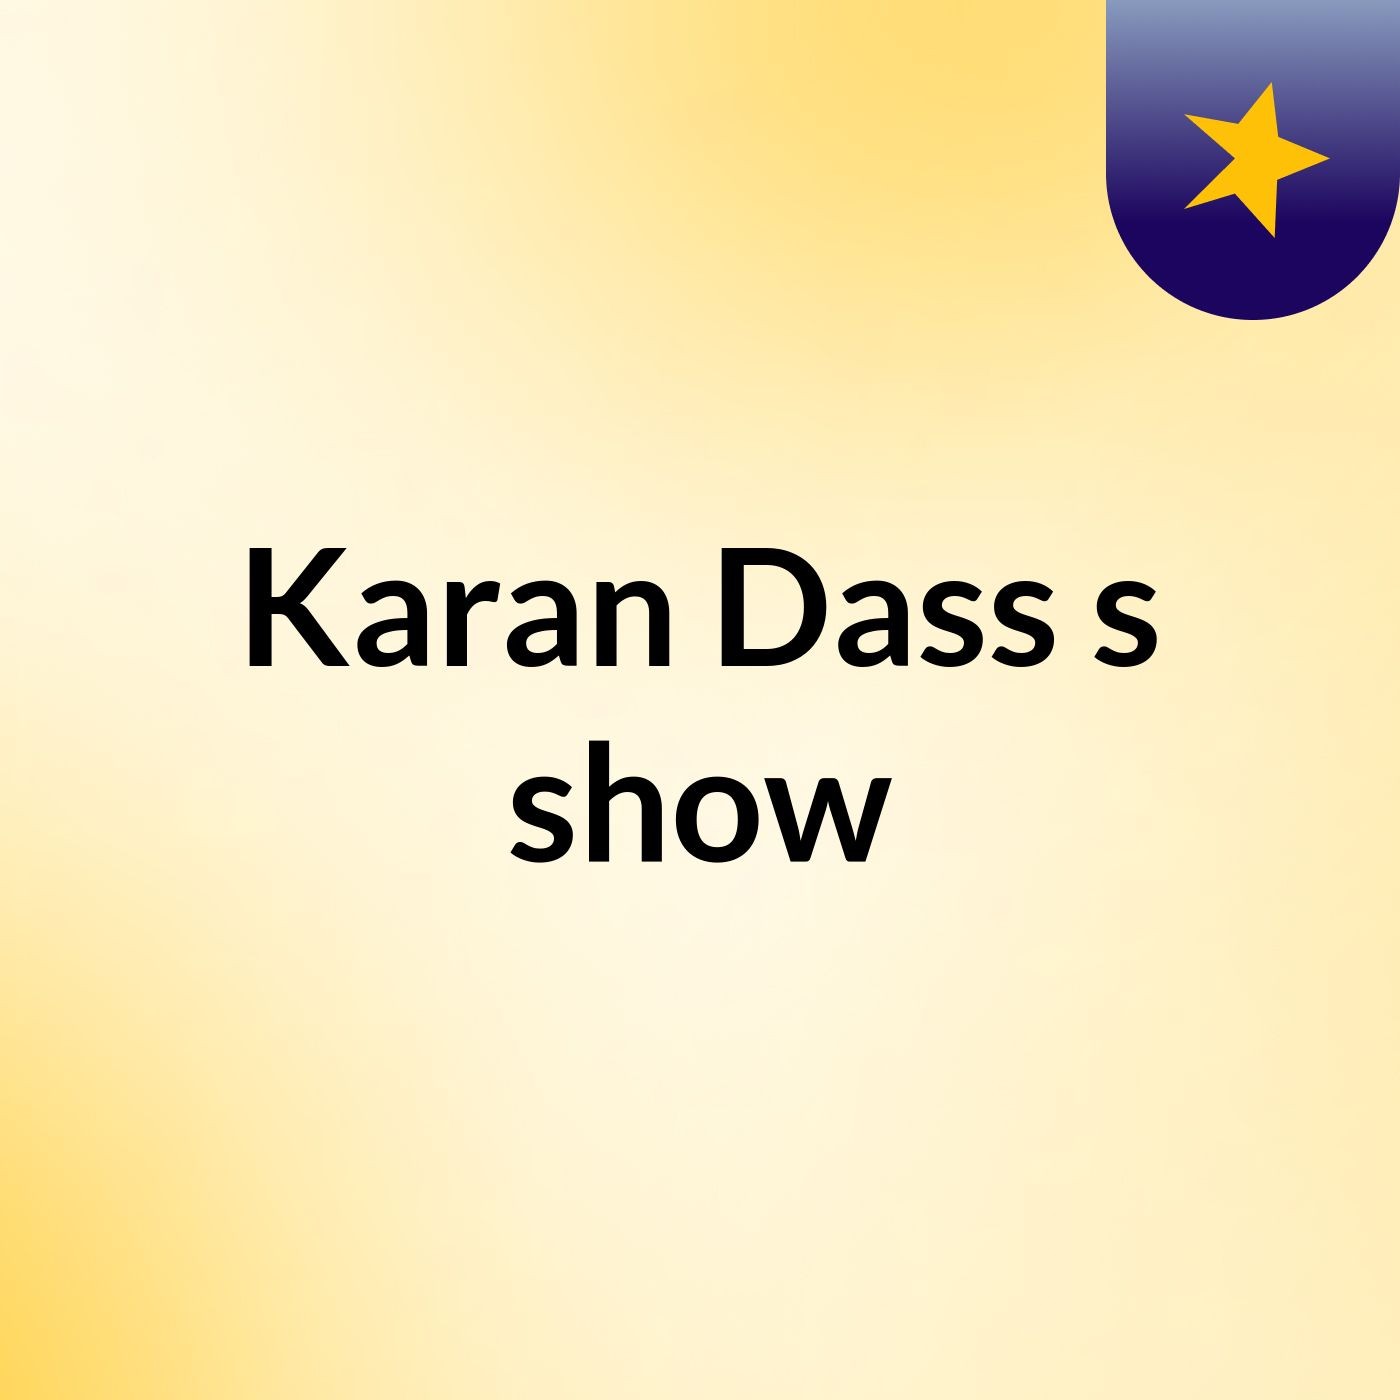 Karan Dass's show